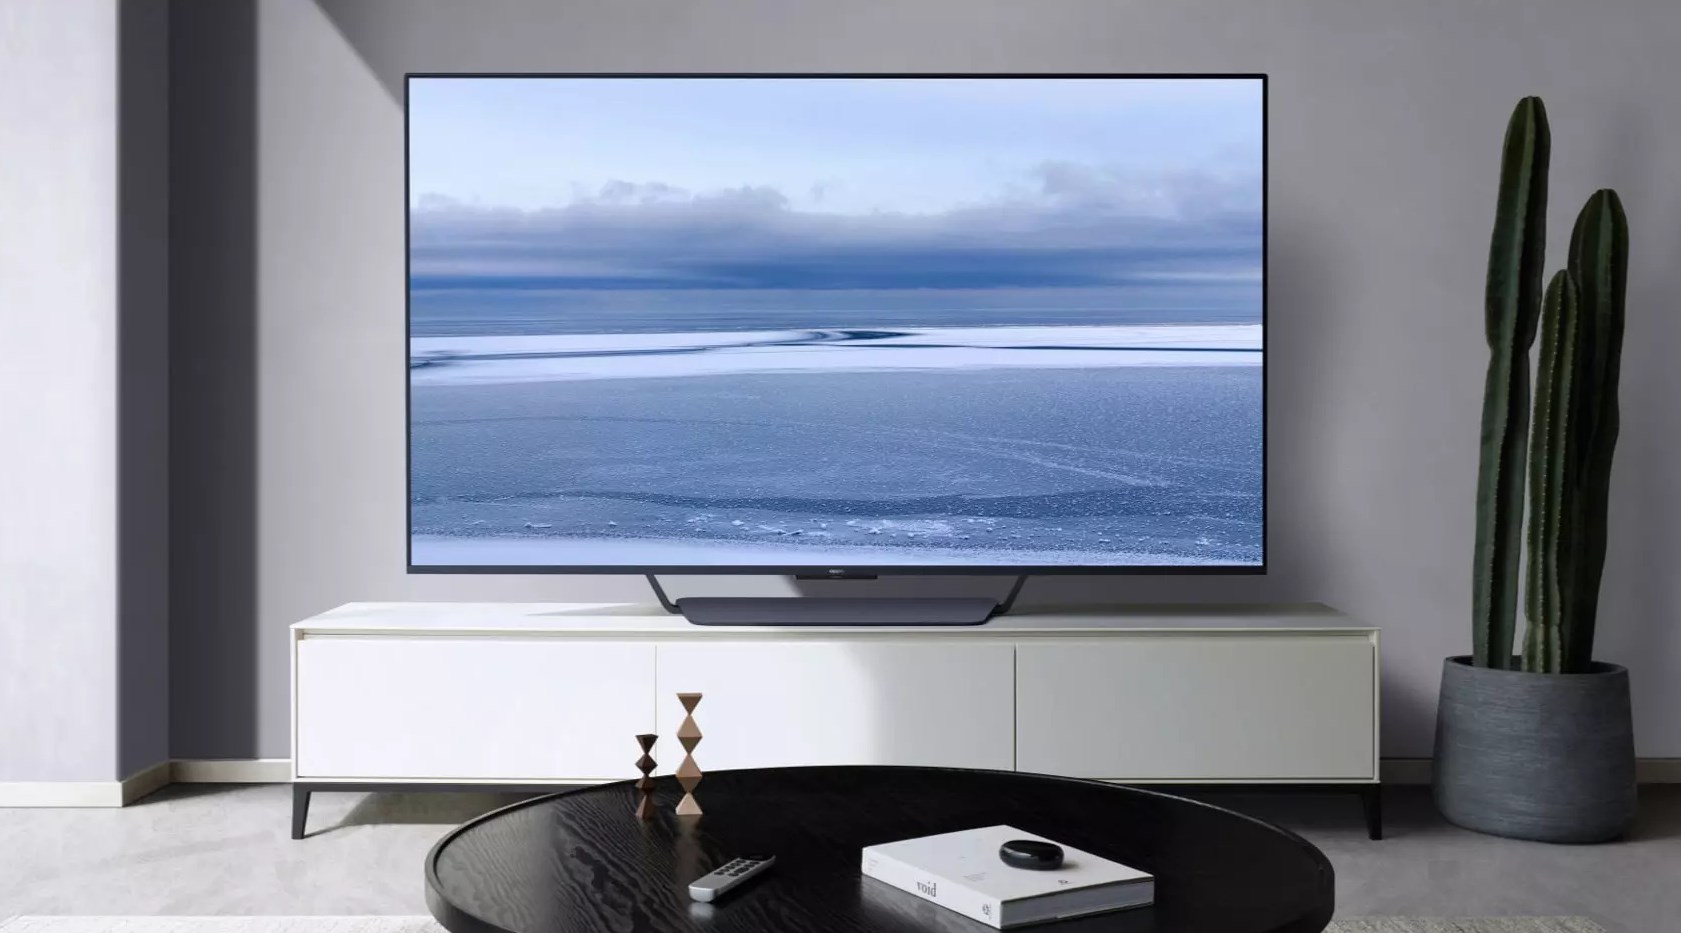 Oppo ilk akıllı televizyonunu tanıttı: Smart TV S1